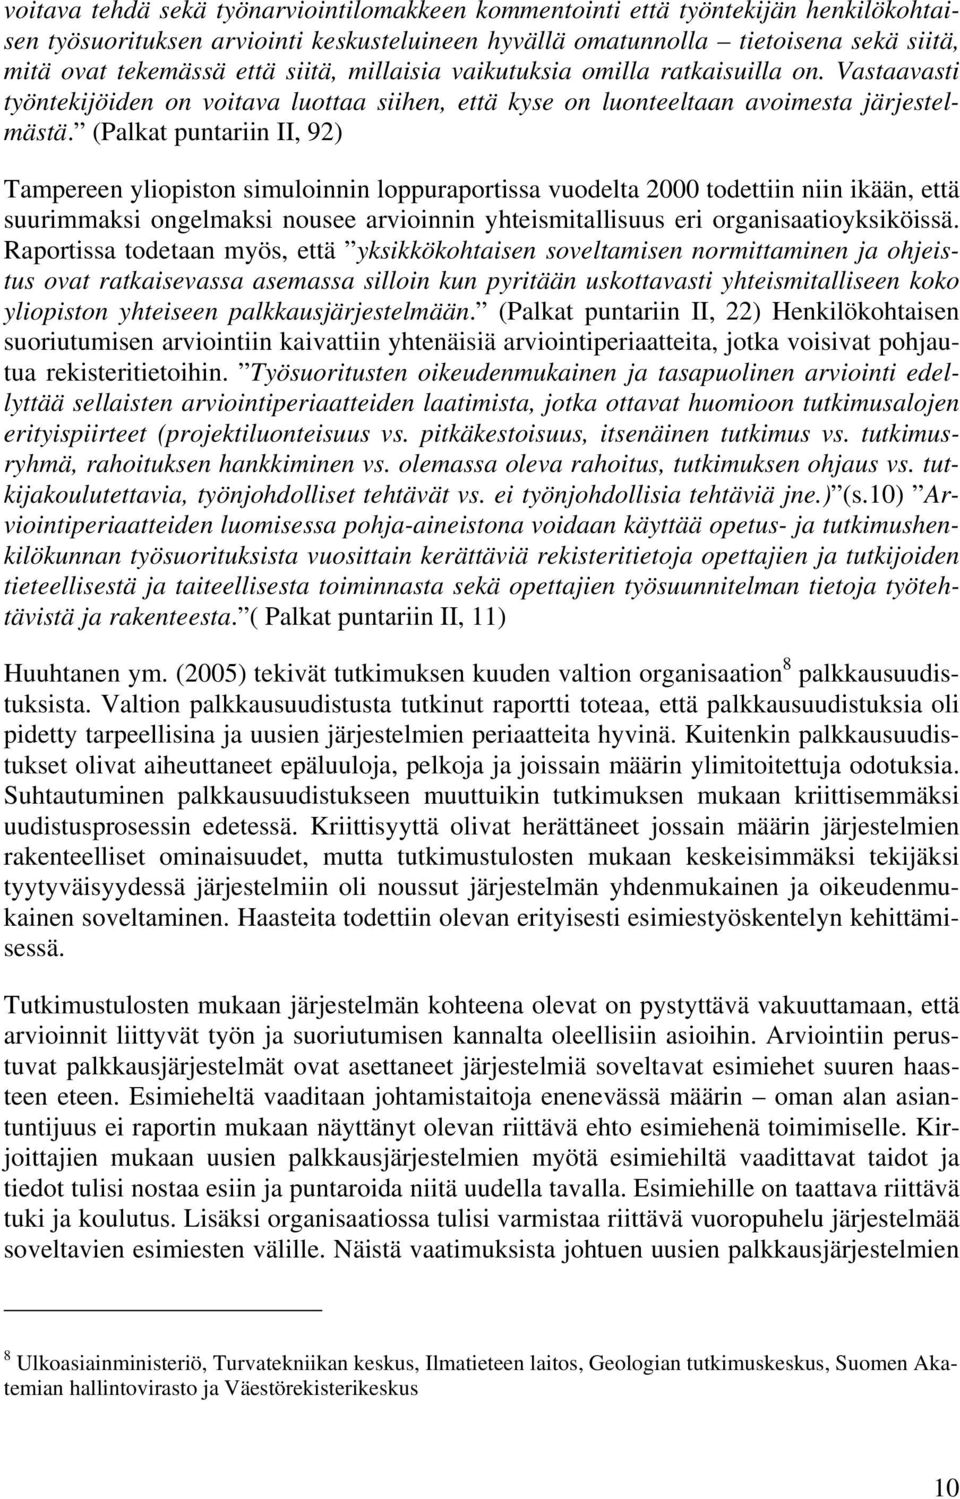 (Palkat puntariin II, 92) Tampereen yliopiston simuloinnin loppuraportissa vuodelta 2000 todettiin niin ikään, että suurimmaksi ongelmaksi nousee arvioinnin yhteismitallisuus eri